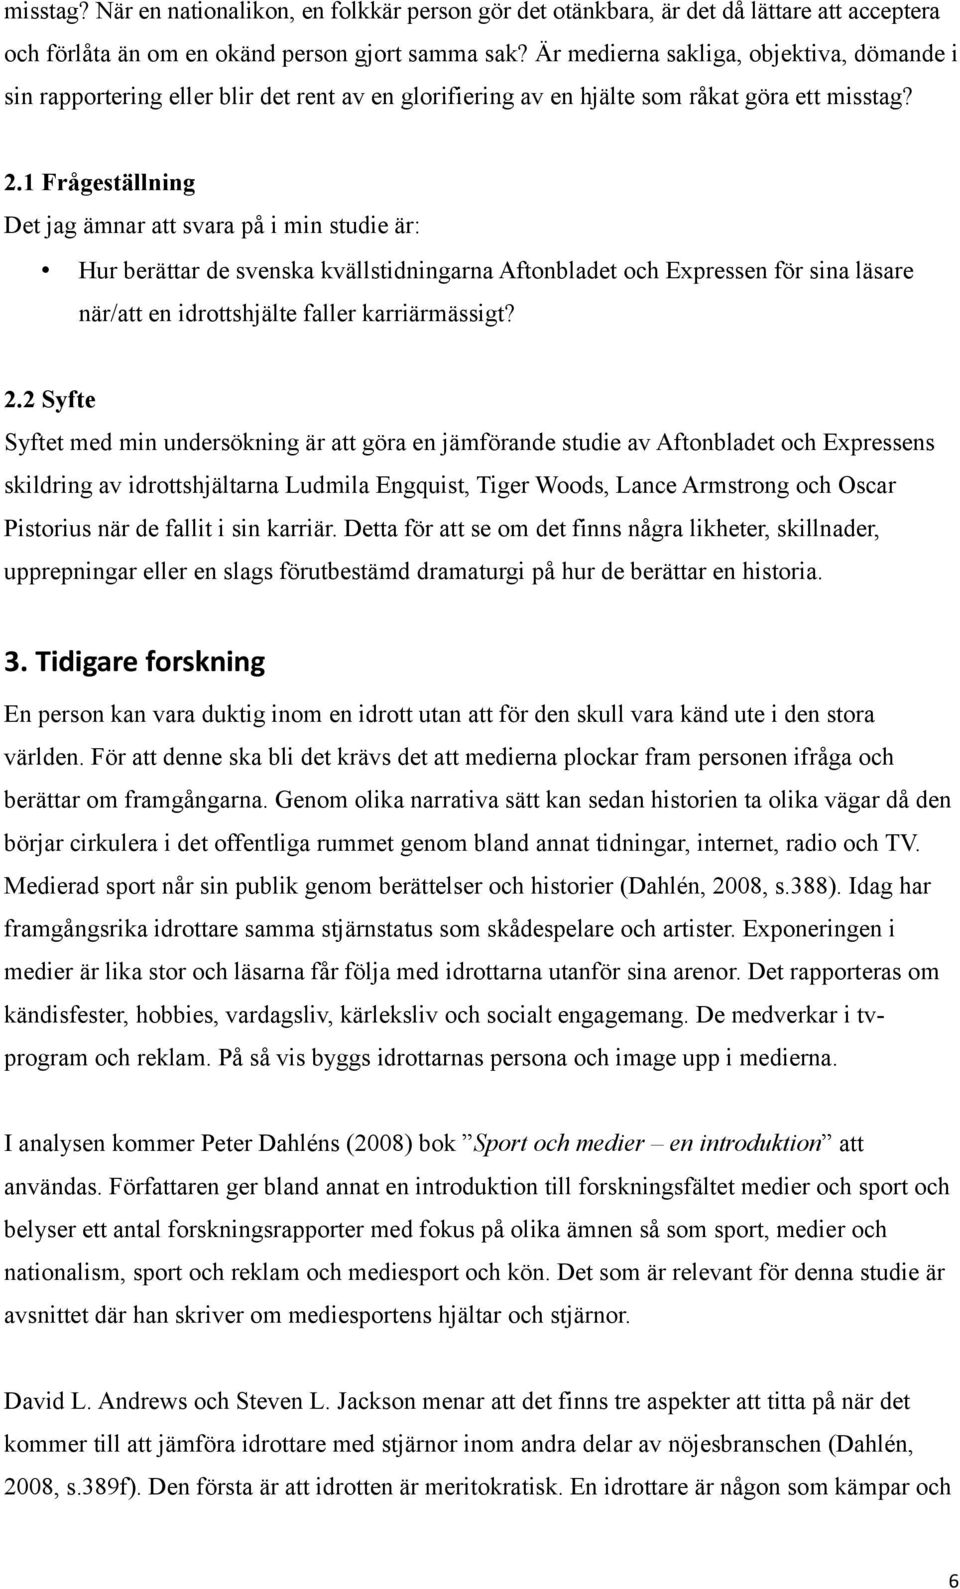 1 Frågeställning Det jag ämnar att svara på i min studie är: Hur berättar de svenska kvällstidningarna Aftonbladet och Expressen för sina läsare när/att en idrottshjälte faller karriärmässigt? 2.